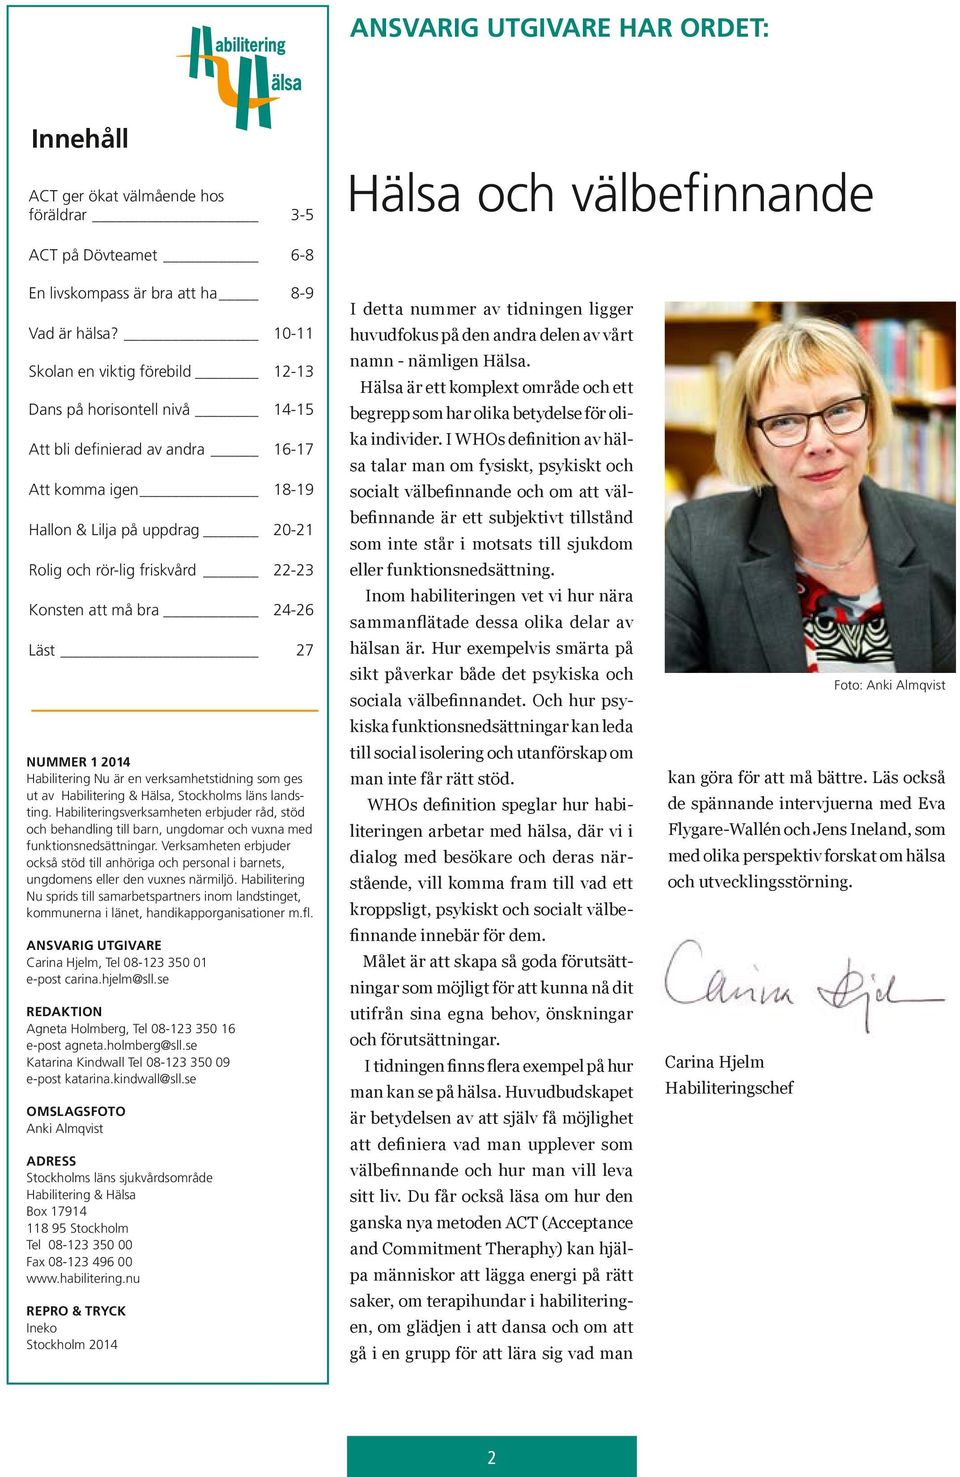 att må bra 24-26 Läst 27 NUMMER 1 2014 Habilitering Nu är en verksamhetstidning som ges ut av Habilitering & Hälsa, Stockholms läns landsting.